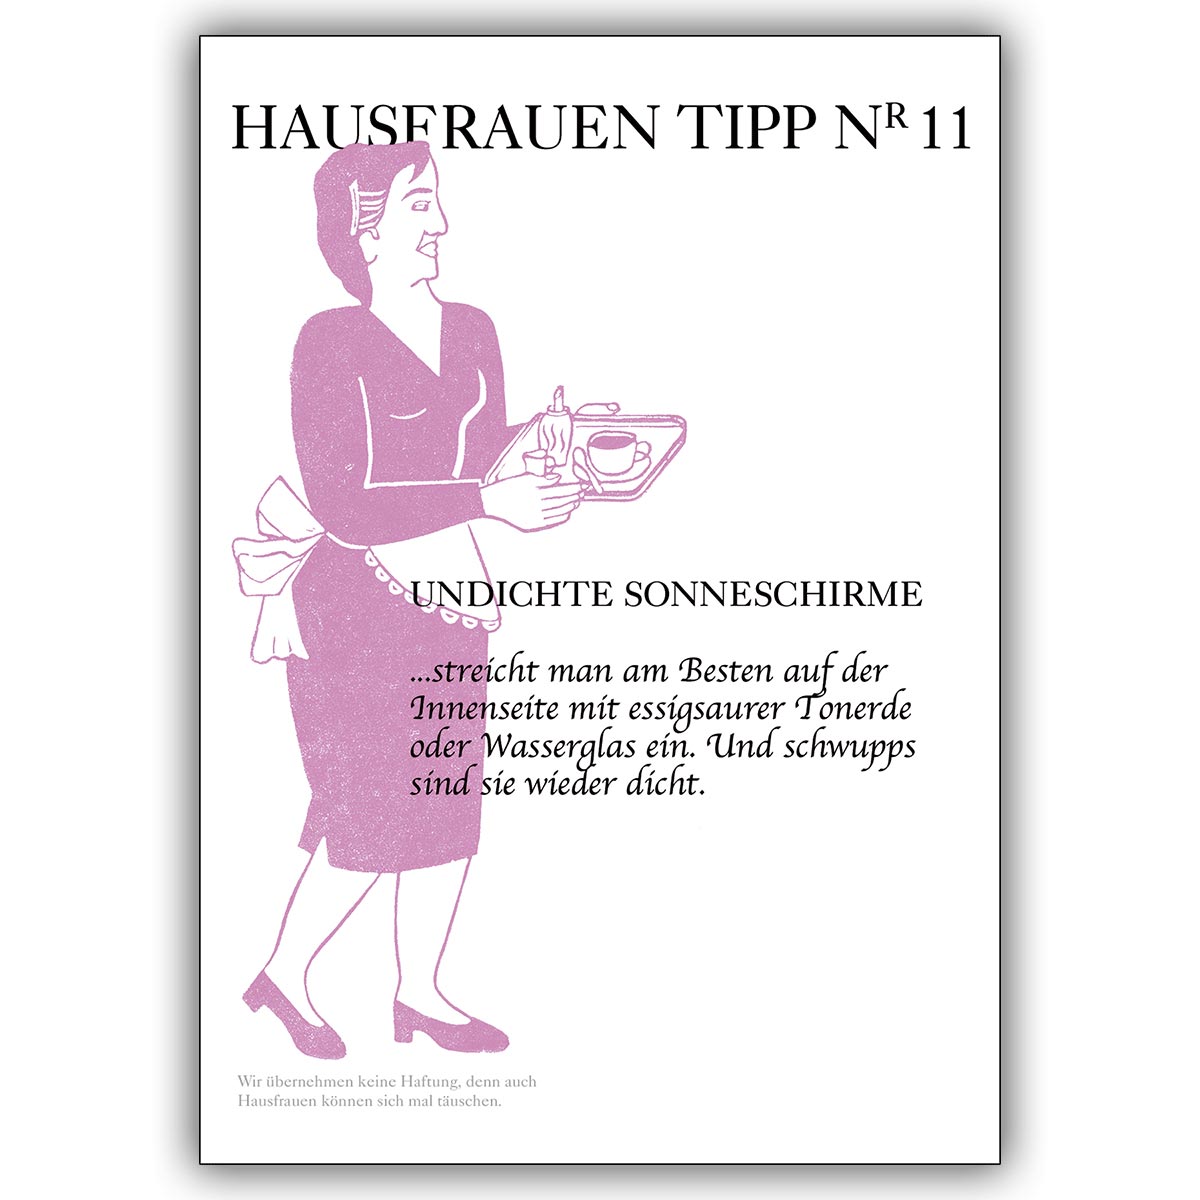 Verregnete Sommer Grusskarte mit Hausfrauen Tipp Nr. 11: undichte Sonnenschirme